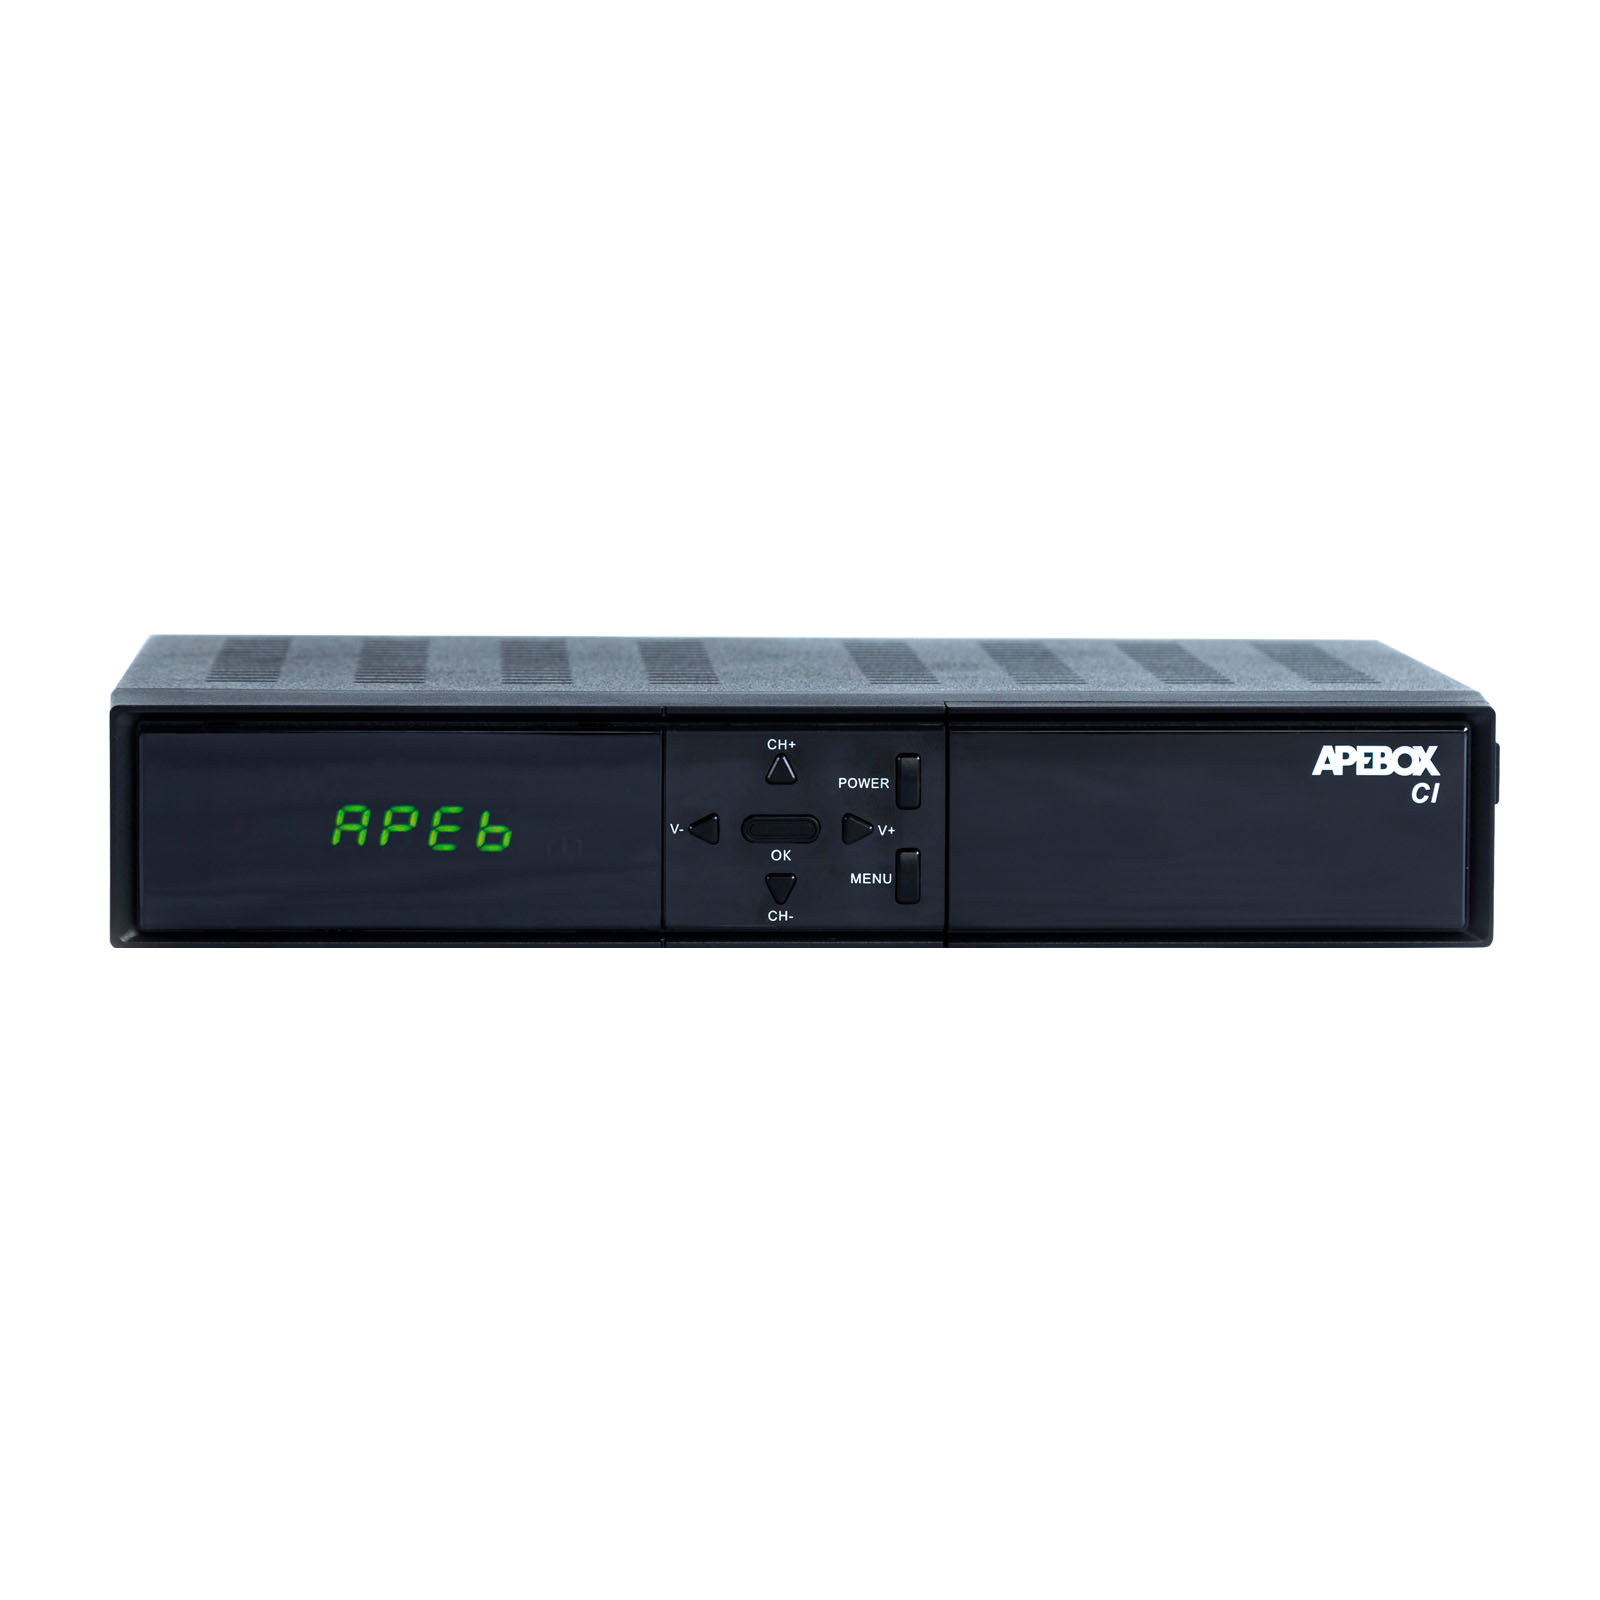 APEBOX CI FULL HD H.265 LAN HDMI 1X DVB-S2 MULTISTREAM 1X DVB-T2/C COMBO RECEIVER